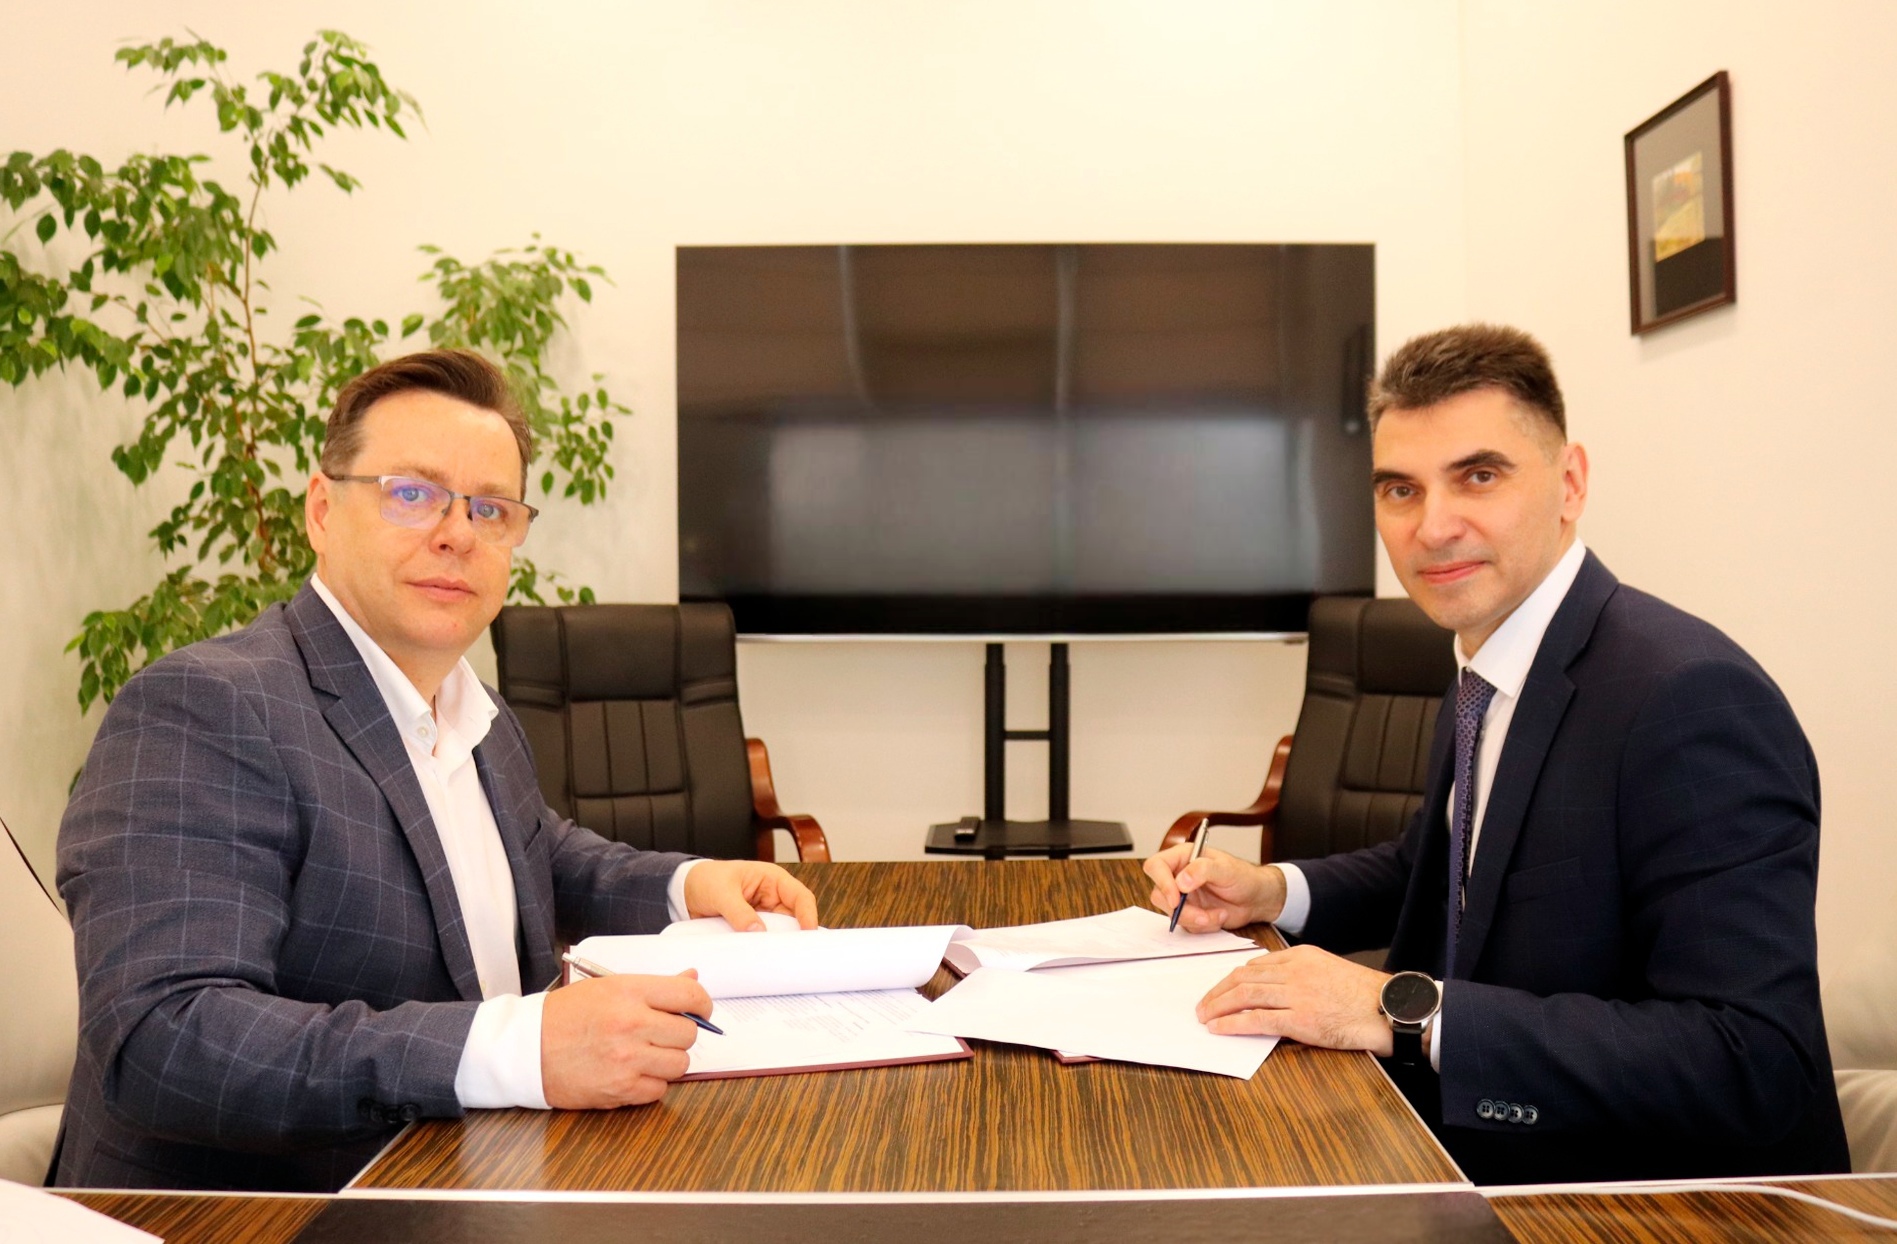 Курский филиал Финуниверситета подписал соглашение с коллегией адвокатов «Гриб, Терновцов и партнеры» 👏